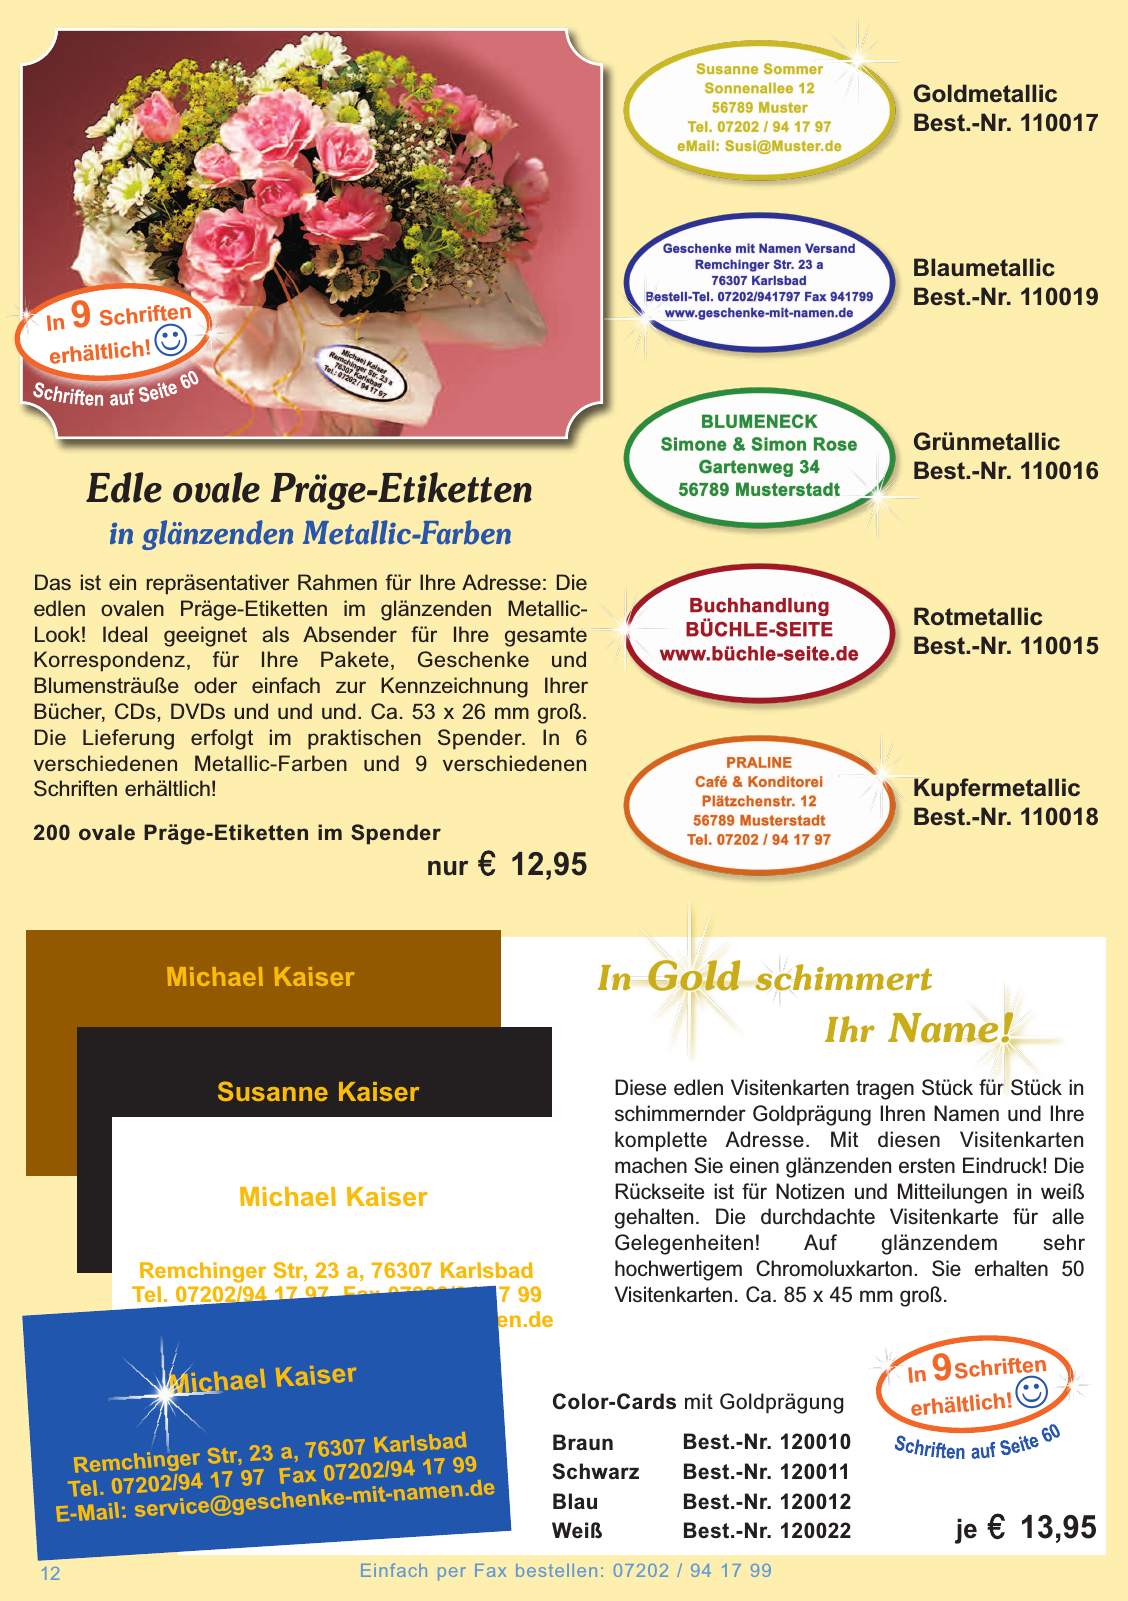 Vorschau Geschenke mit Namen Katalog 2014 / 2015 Seite 12